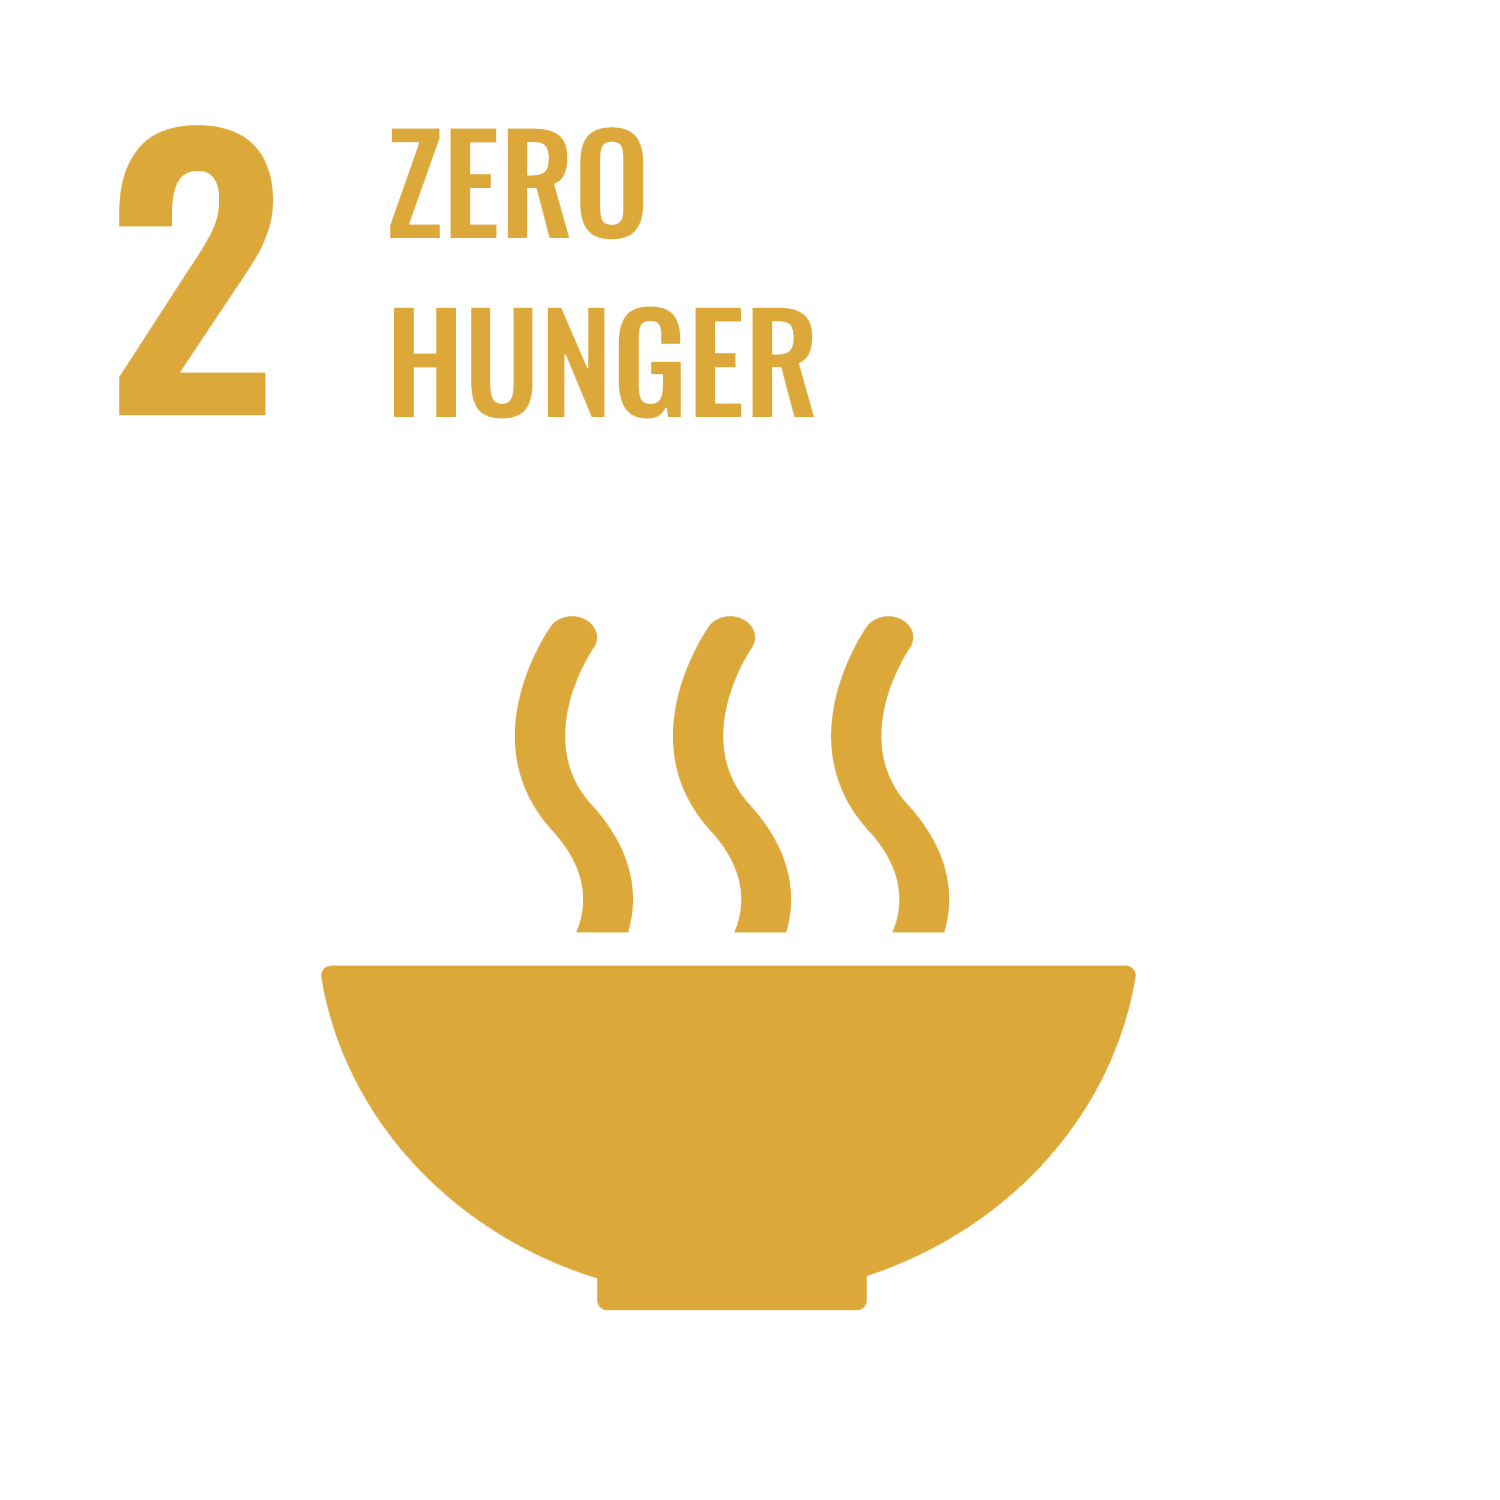 United Nations Goal #2 Zero Hunger